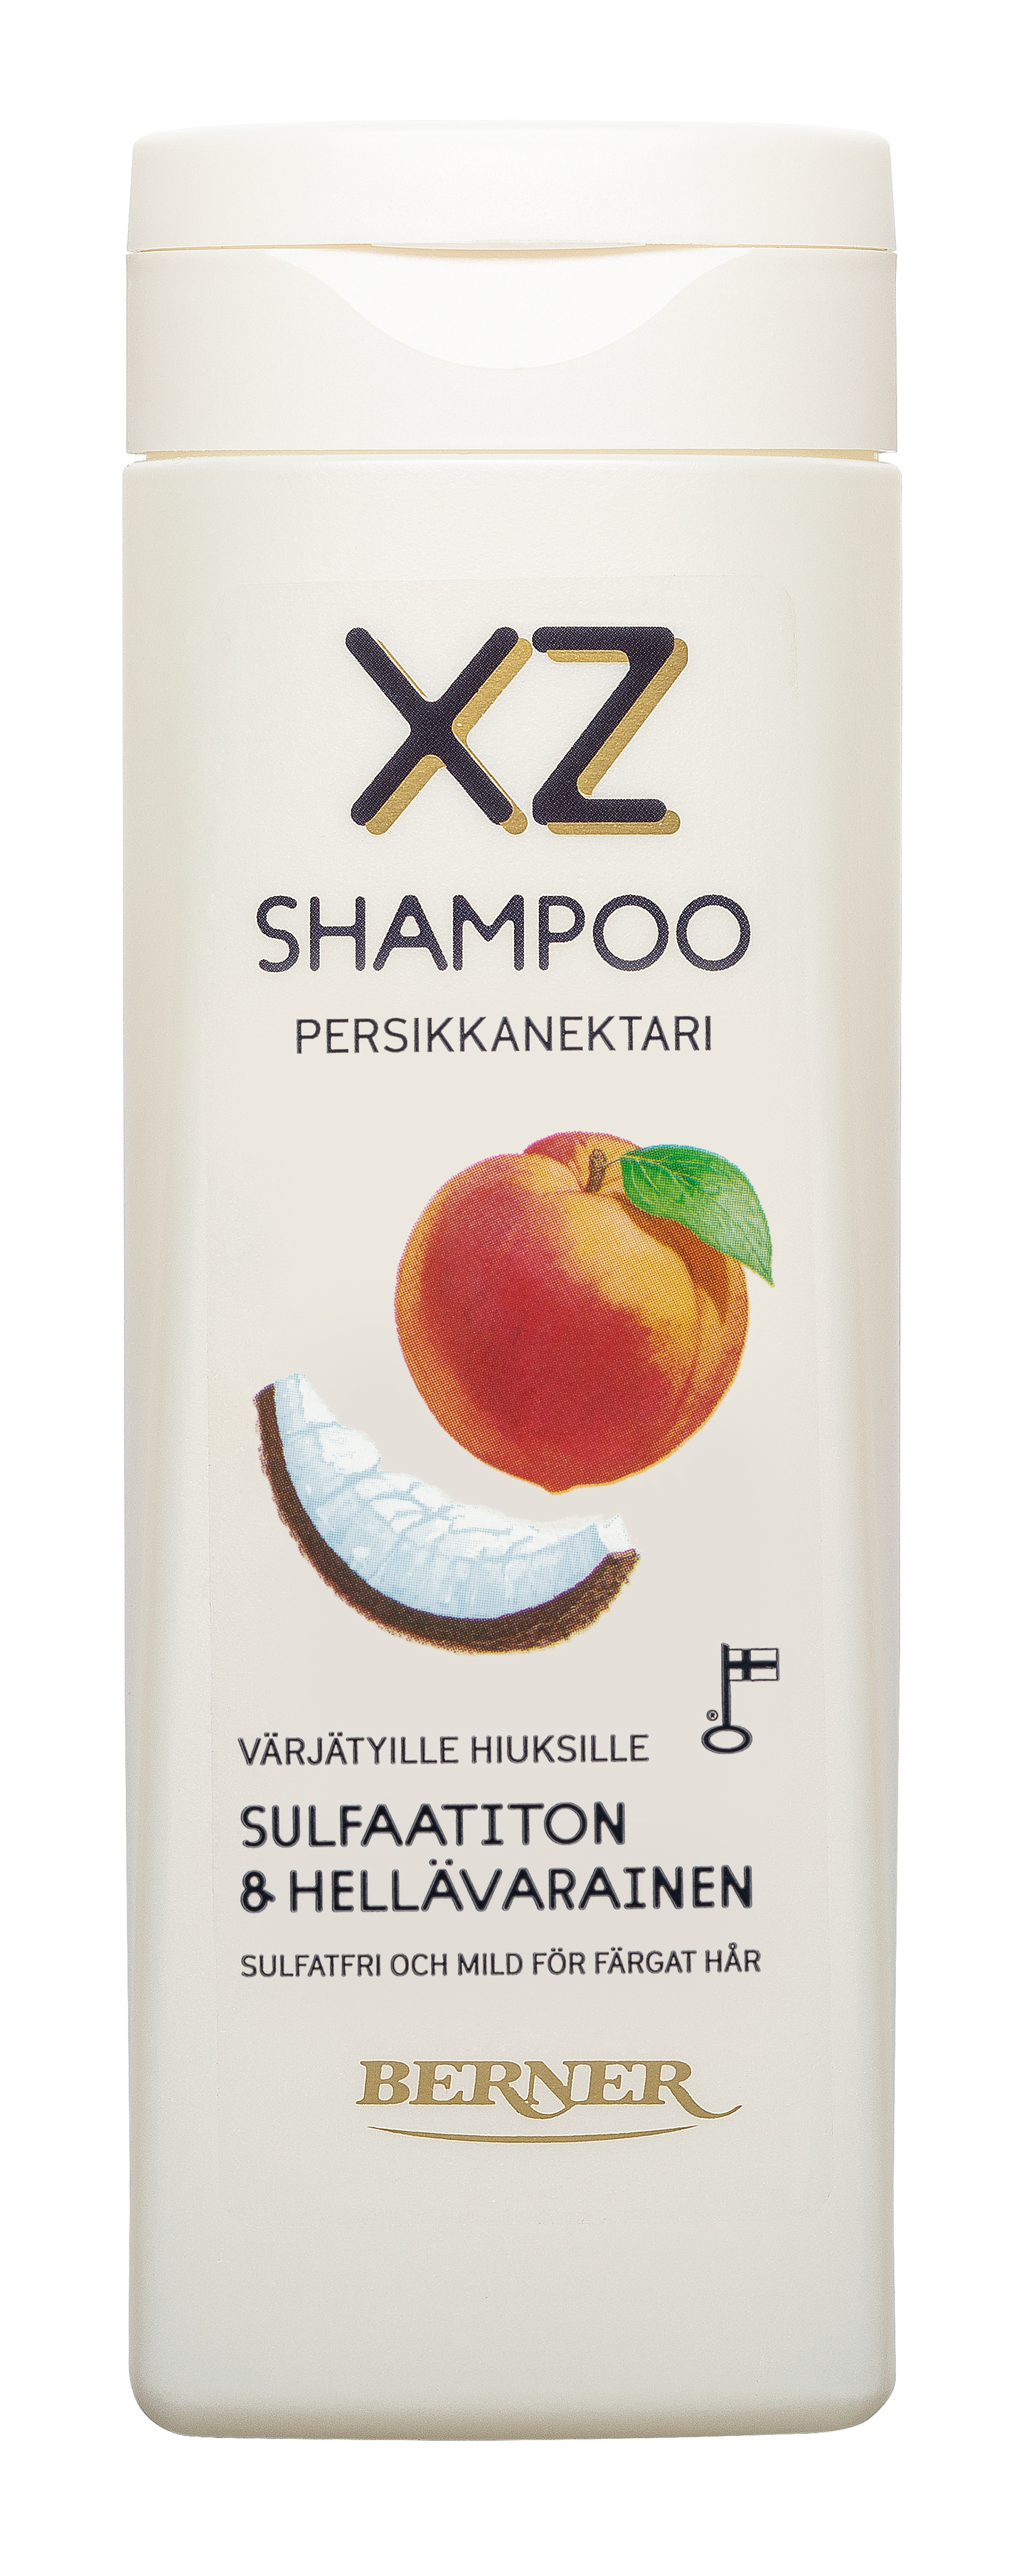 XZ sulfaatiton shampoo 250ml persikkanektari värjätyille hiuksille